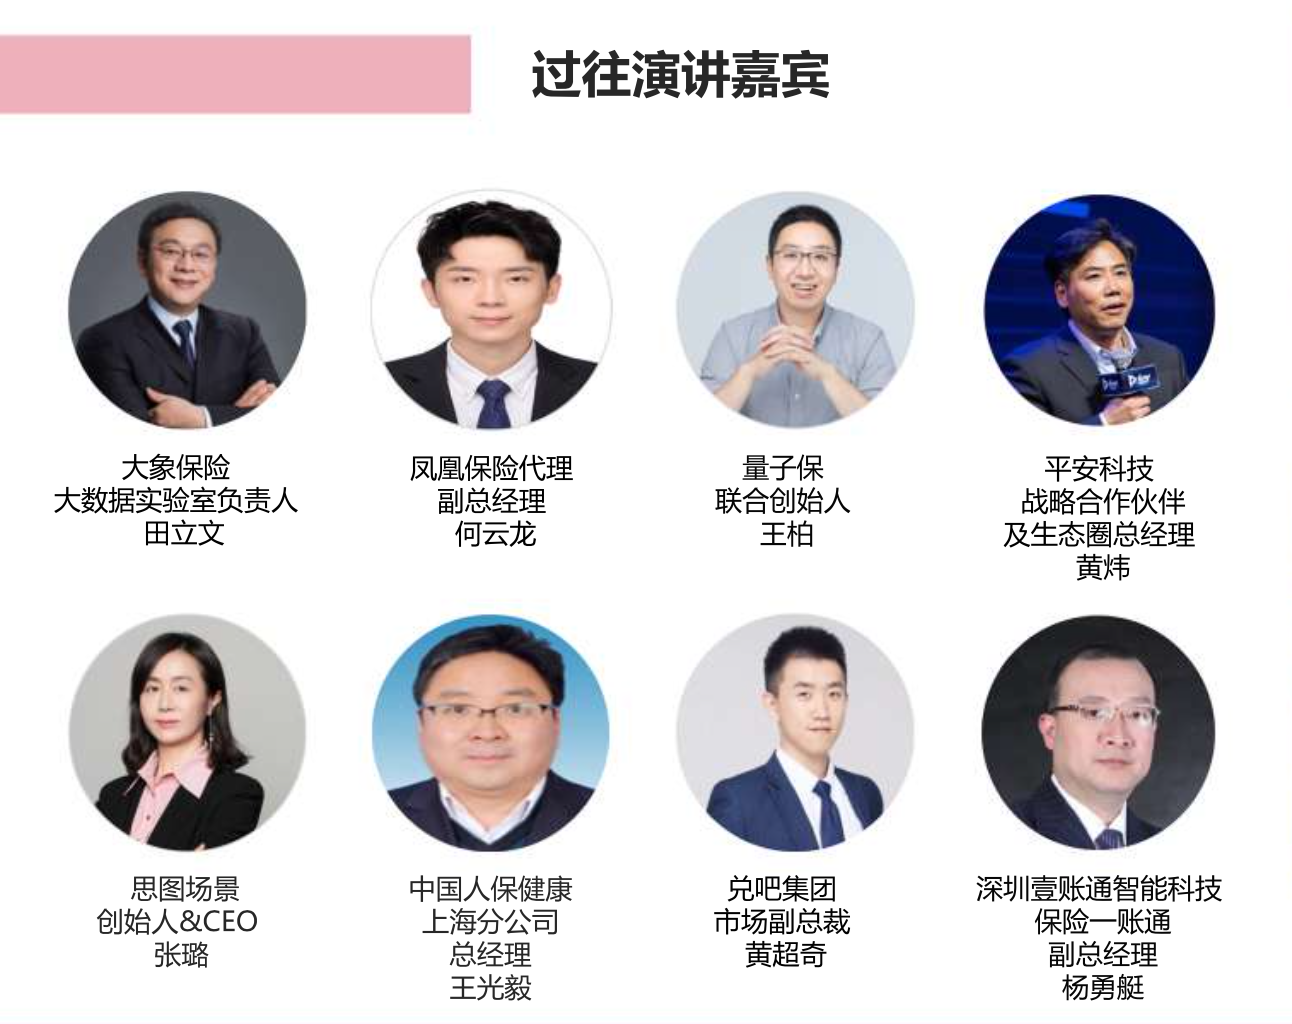 互联网保险大会2020.09.25上海